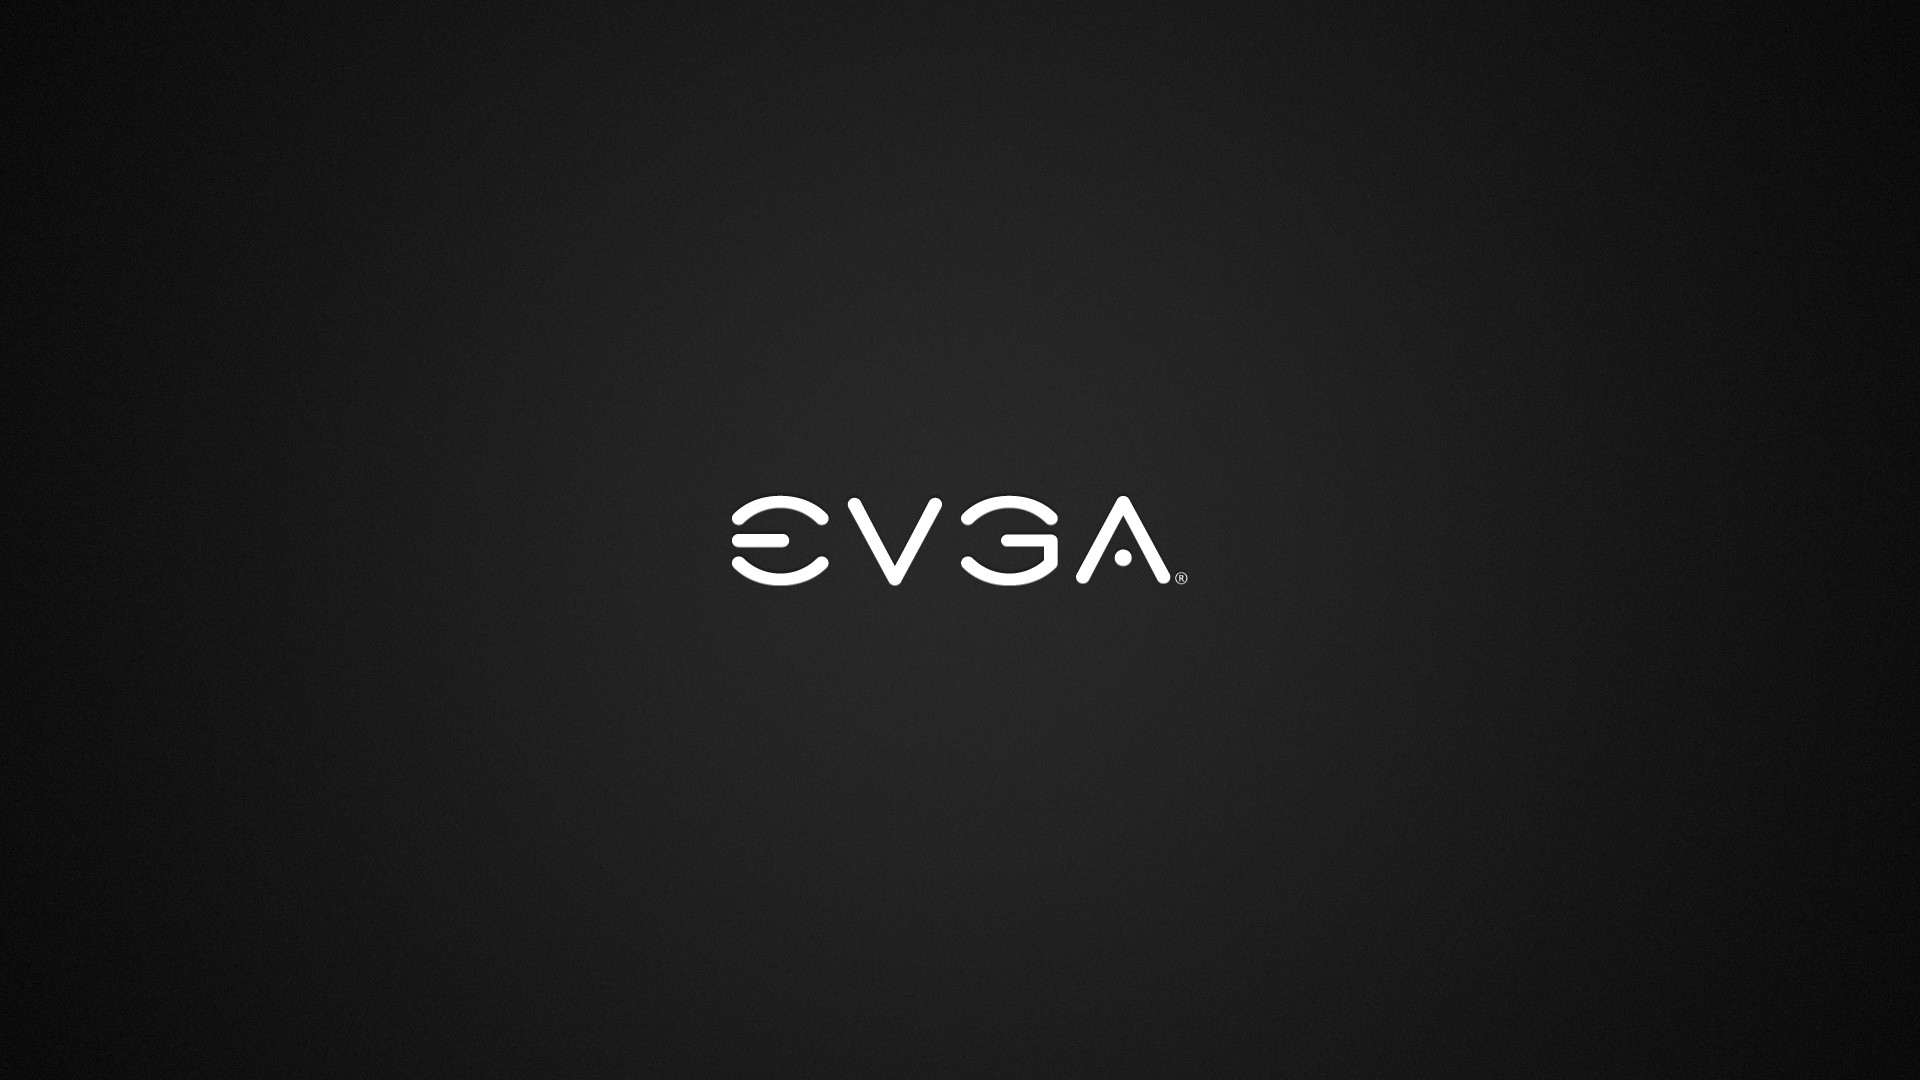 EVGA Computer Graphics Card 1920x1080